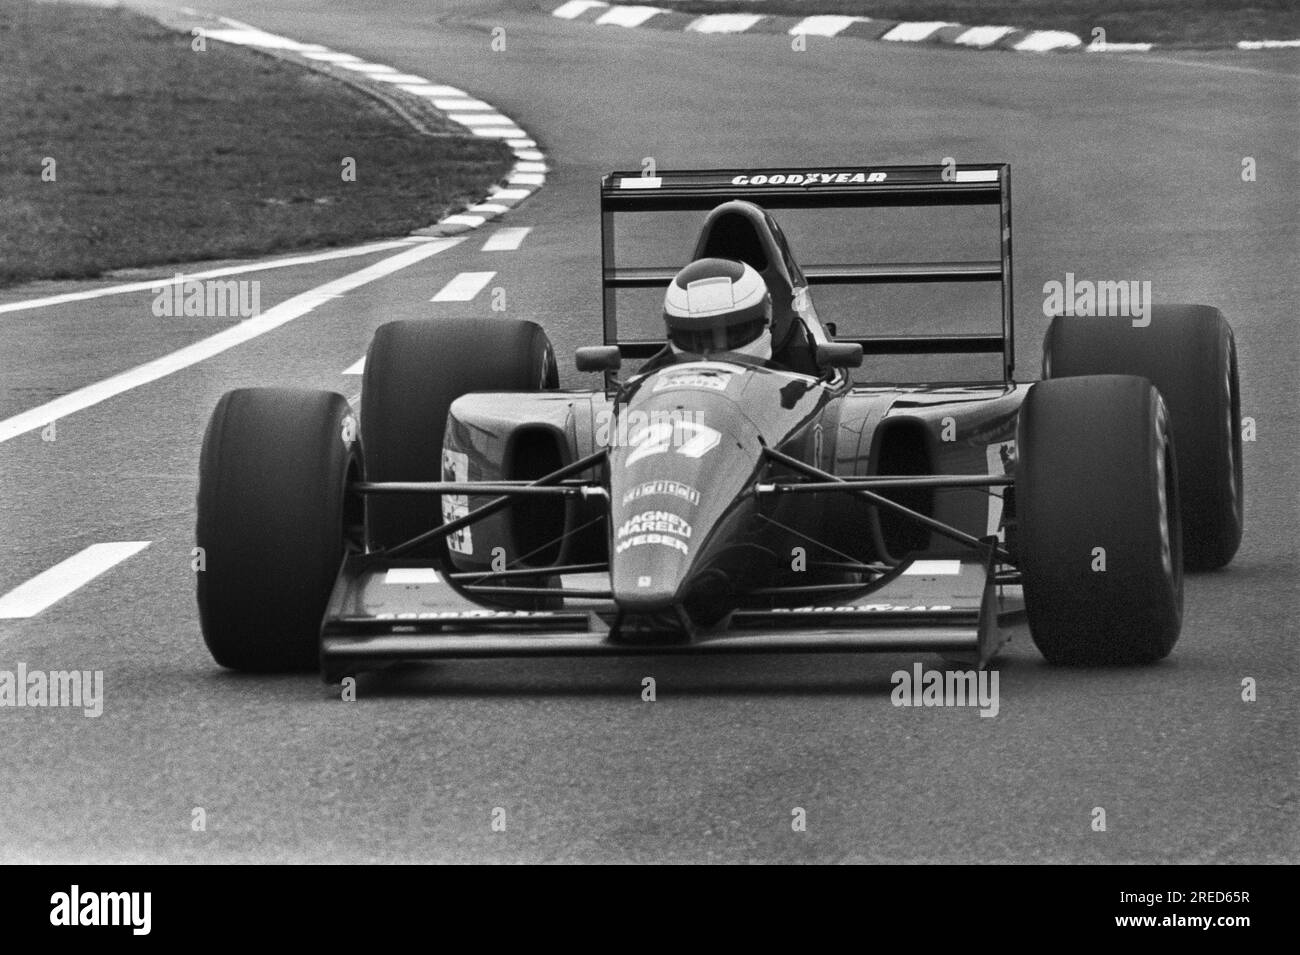 Allemagne, Hockenheim, 15/07/1992 Archive : 35-37-30 essais de Formule 1 au Hockenheimring photo : Jean Alesi, Ferrari [traduction automatique] Banque D'Images